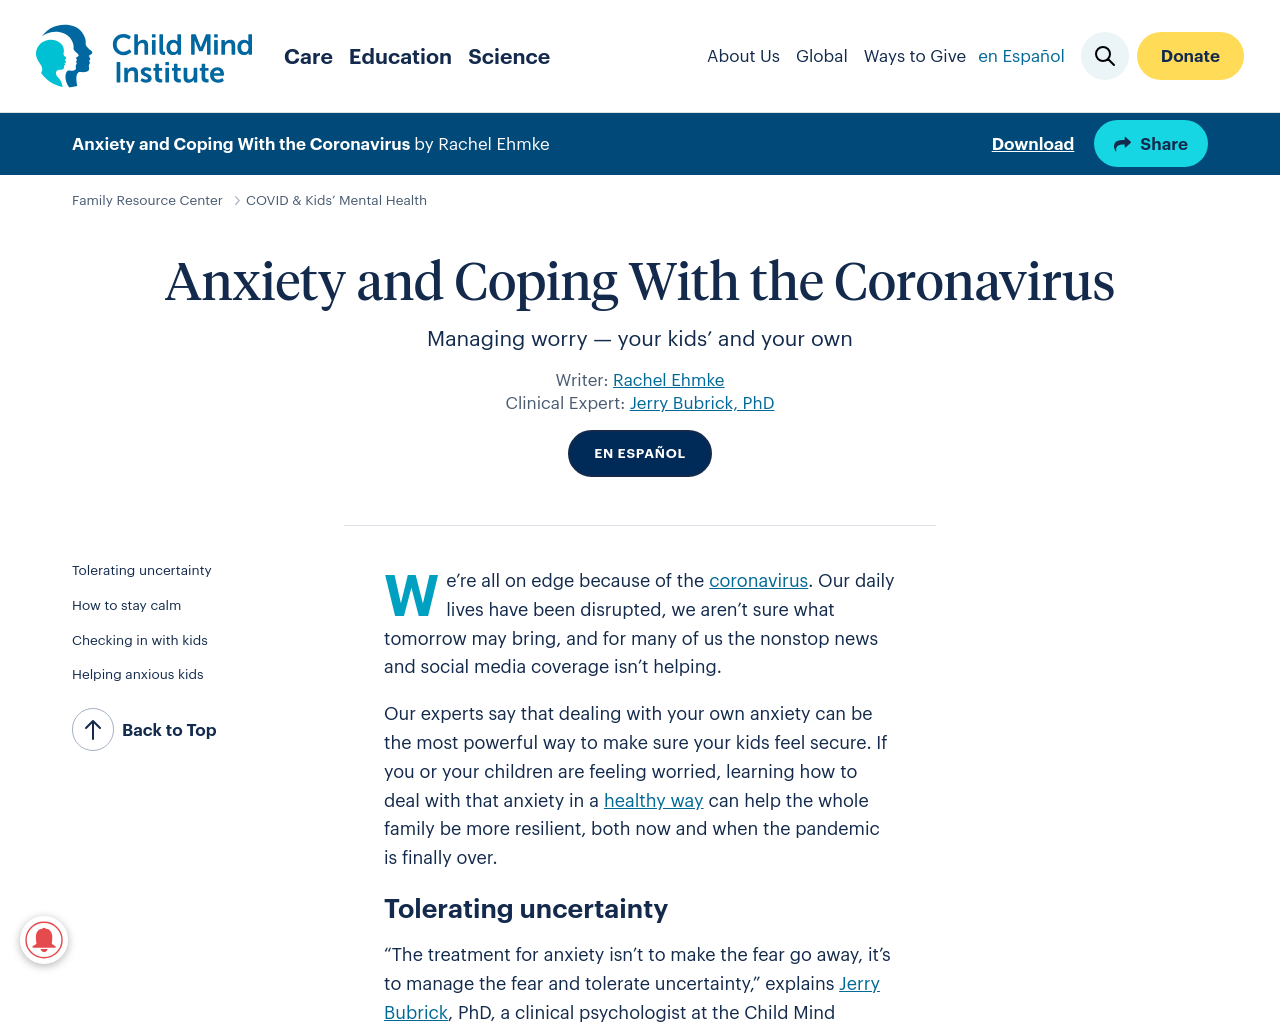 Anxiety and coronavirus